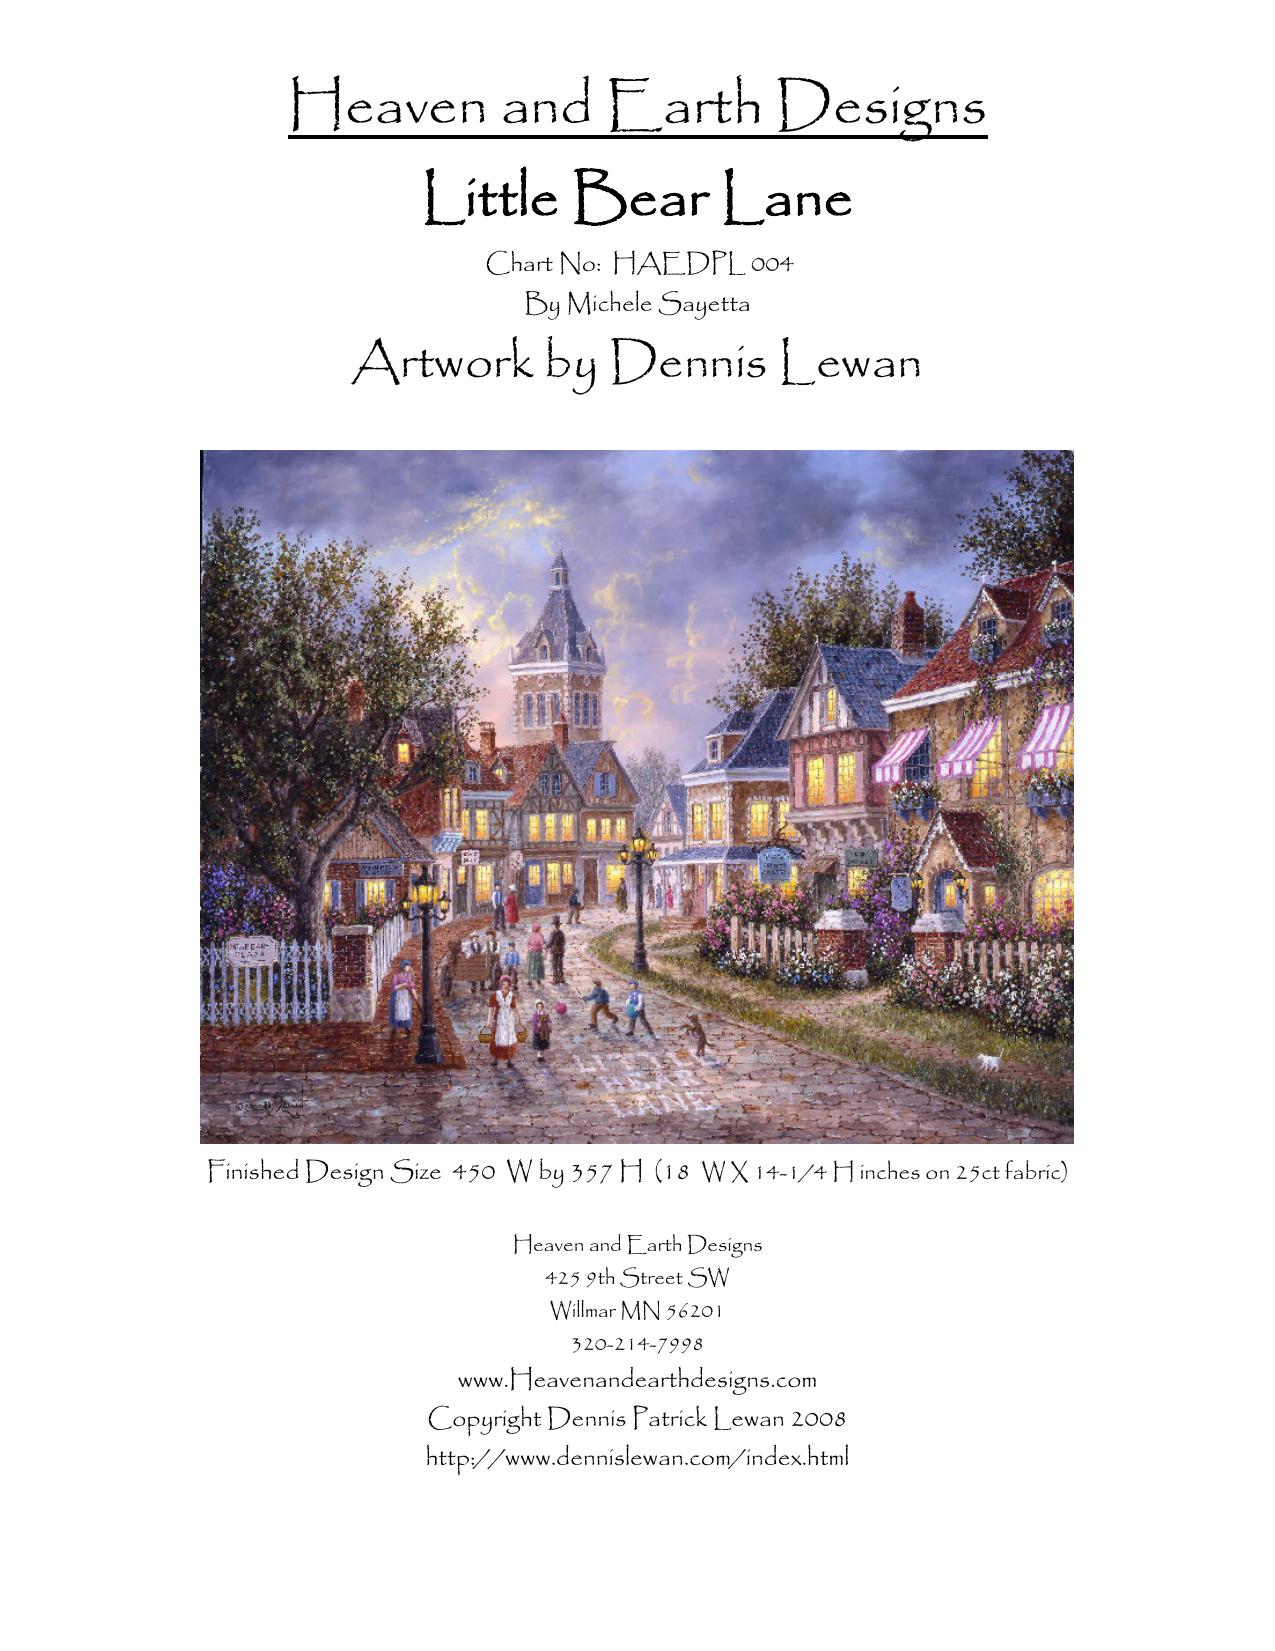 Little Bear Lane.xsd by Robert Sayetta